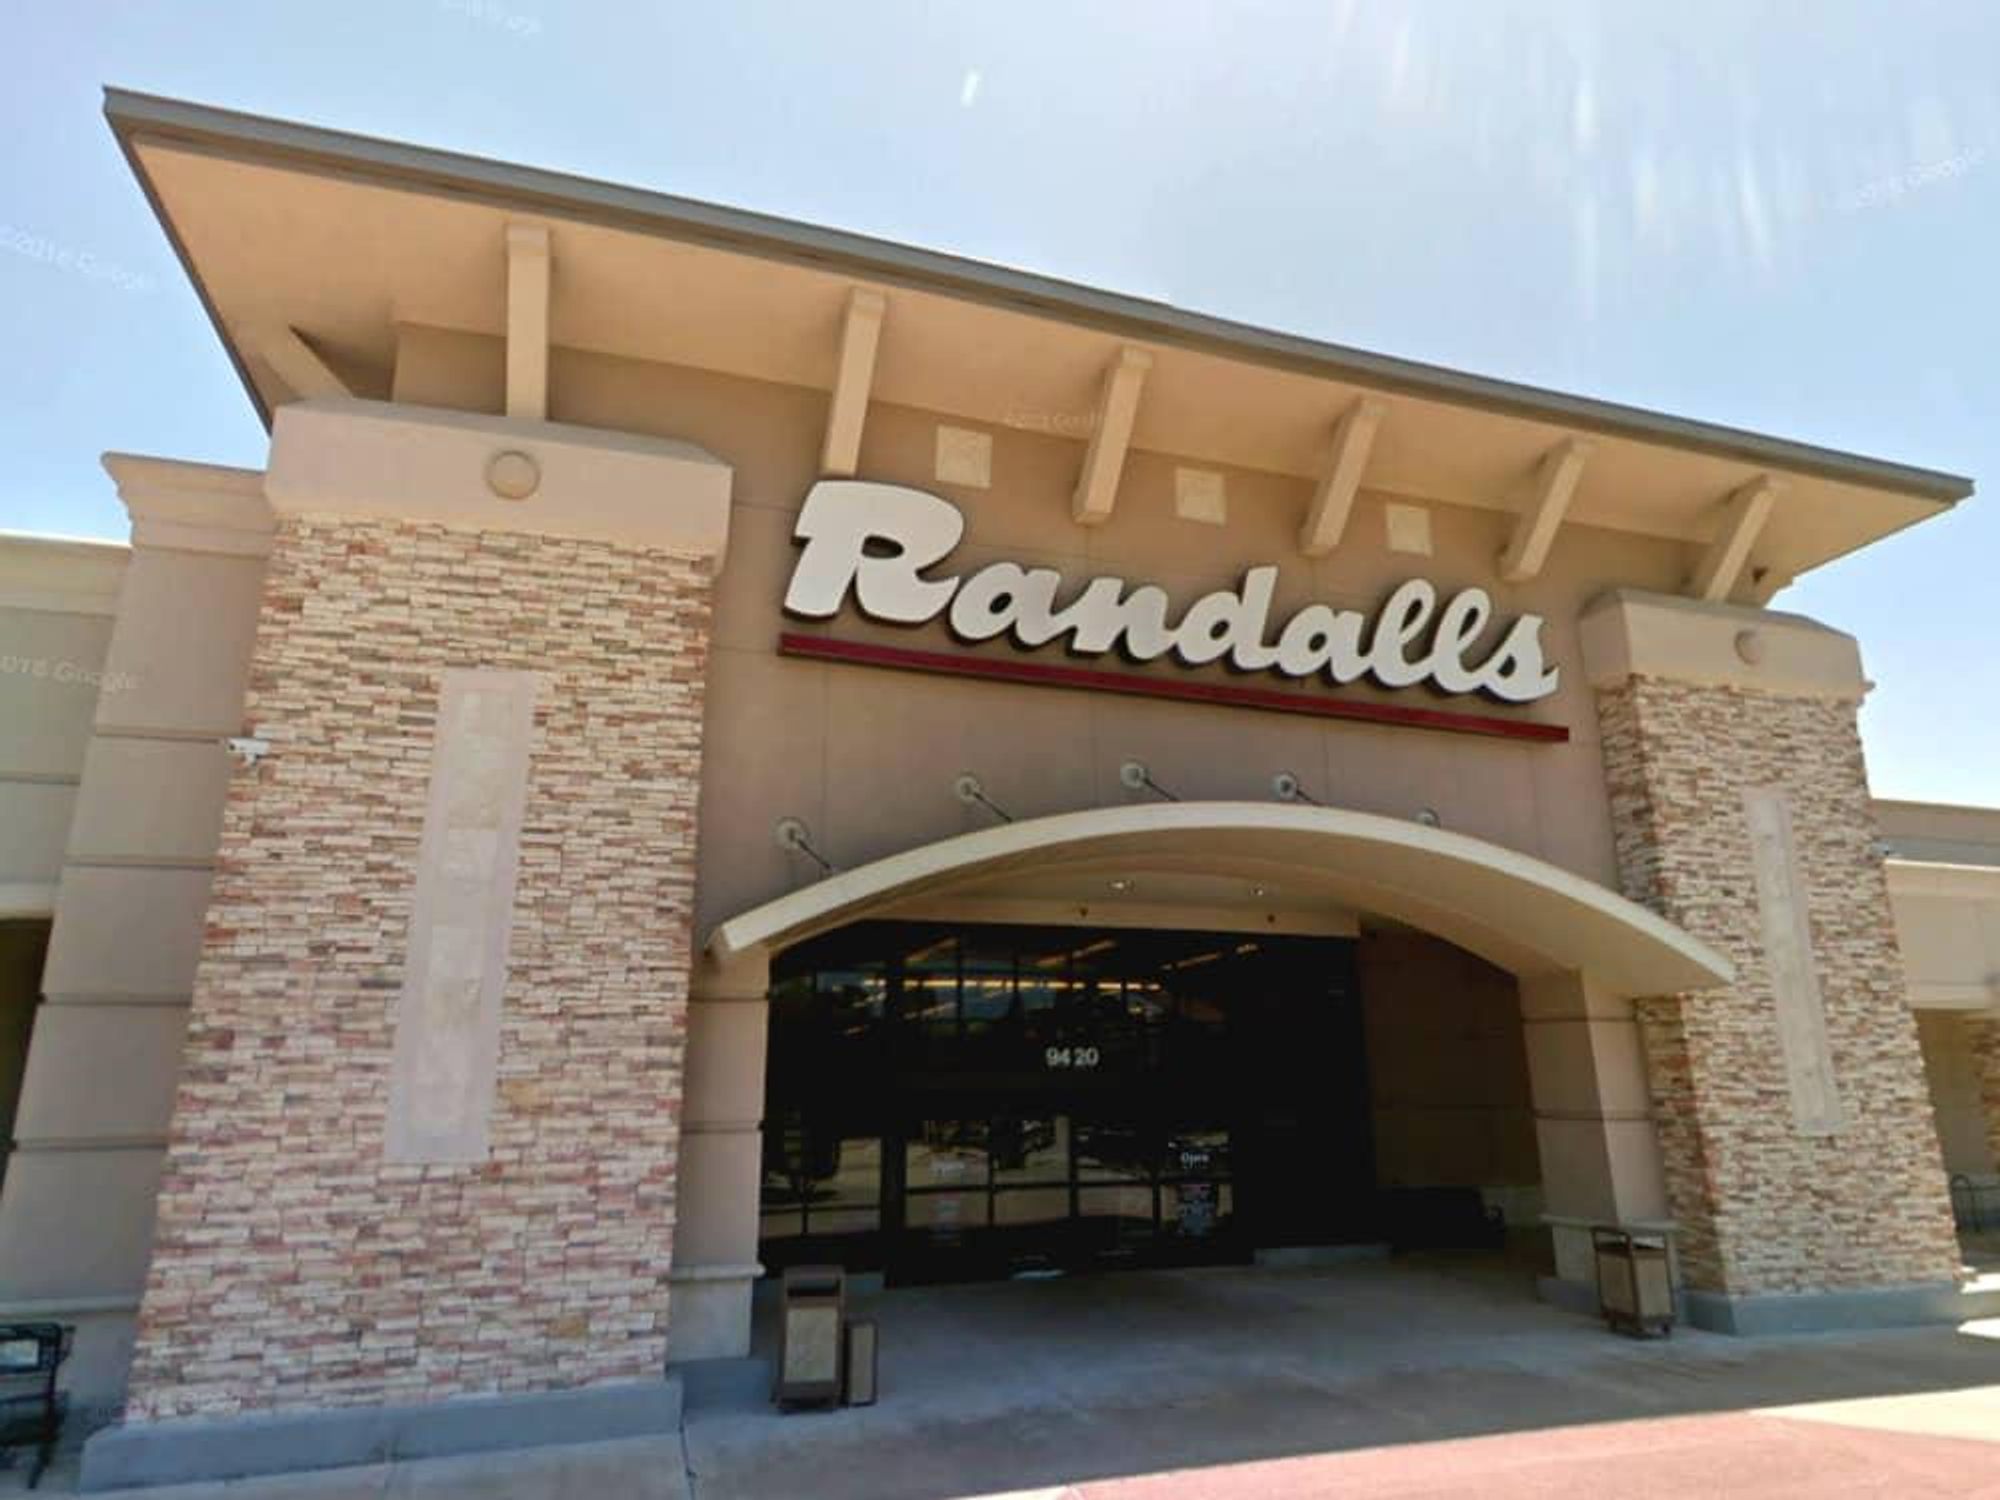 Randalls store exterior